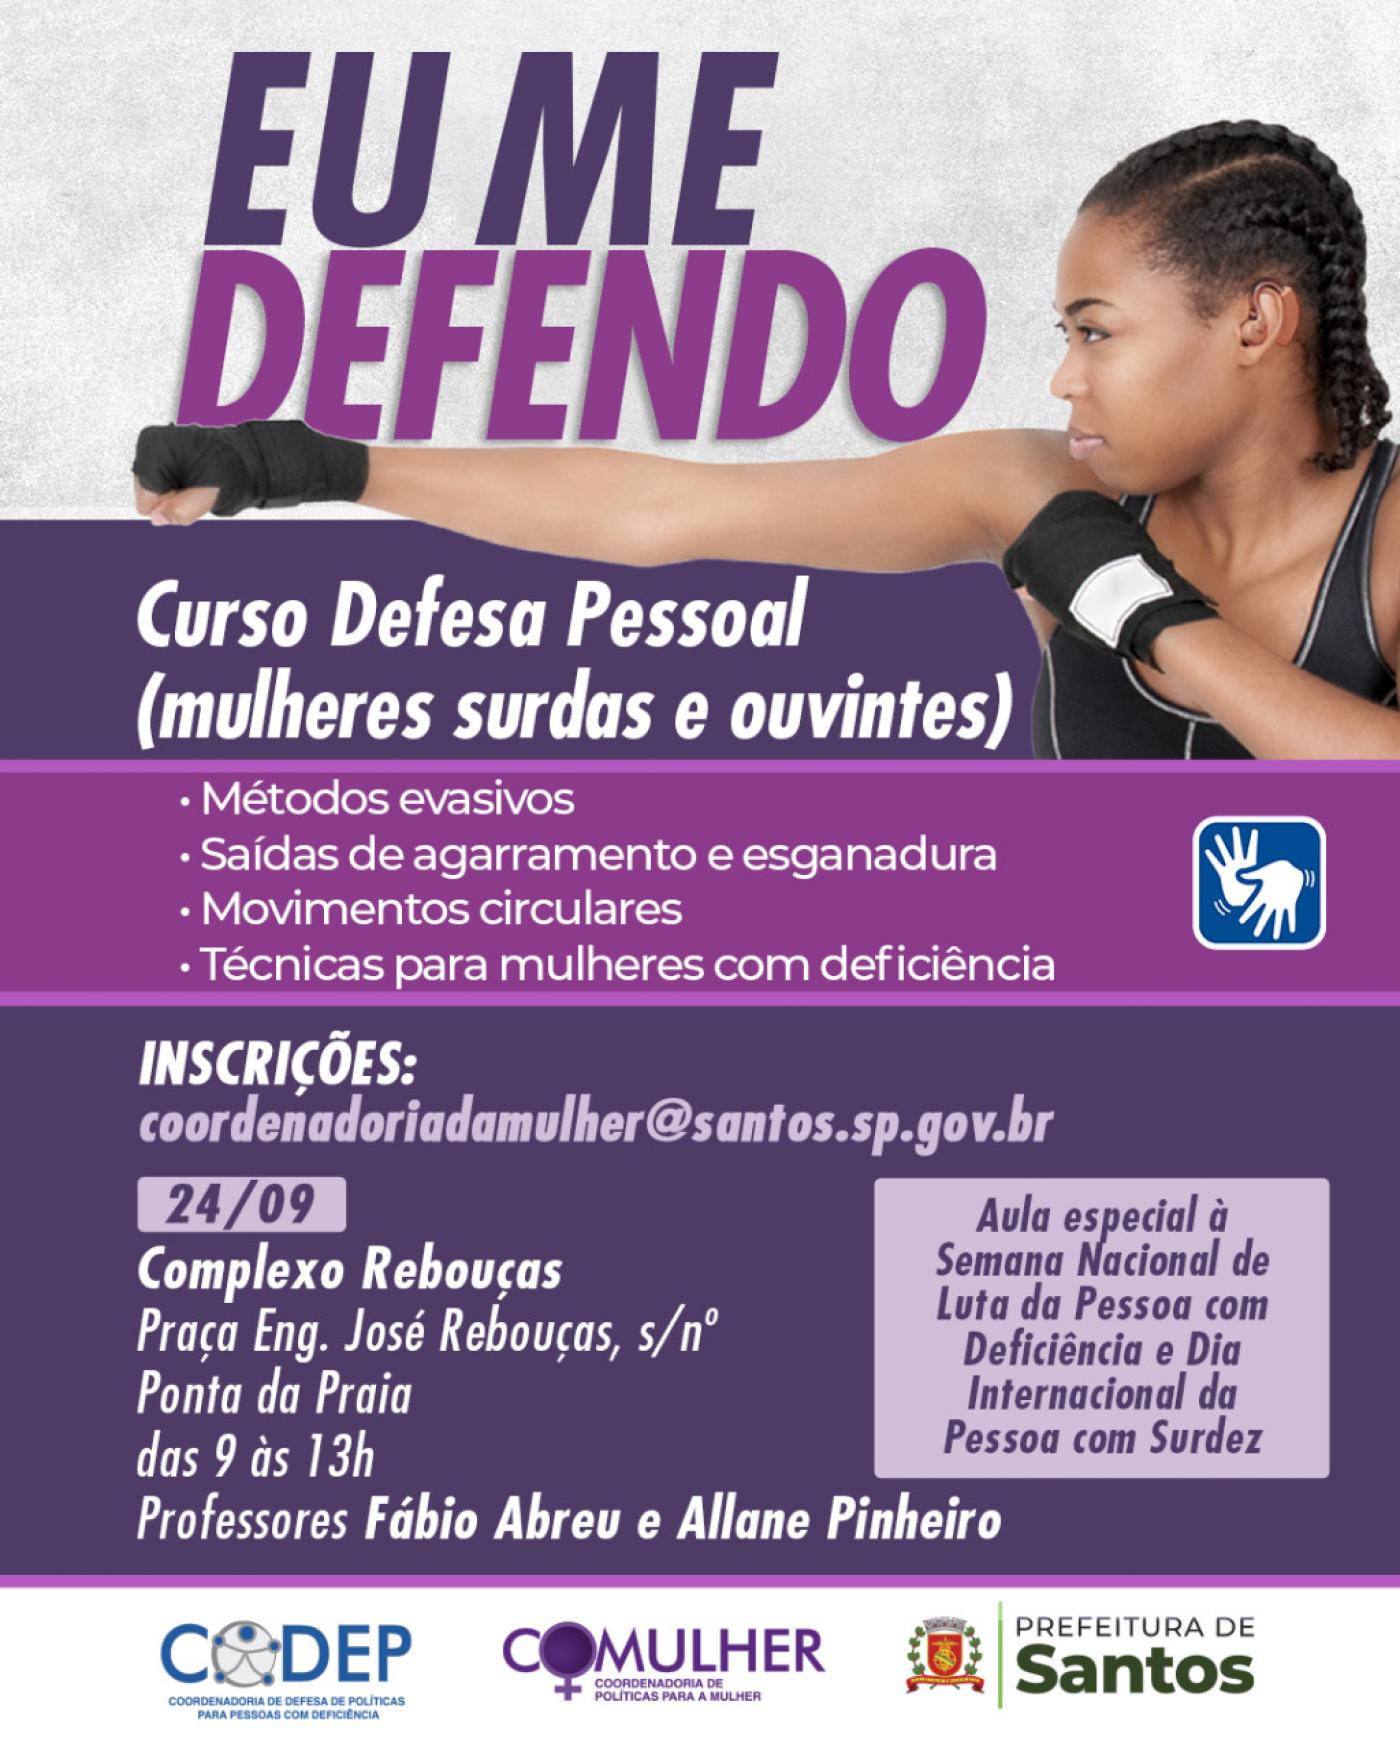 Banner com a inscrição Eu me defendo e as principais informações do curso, junto com a imagem de uma lutadora. #paratodosverem